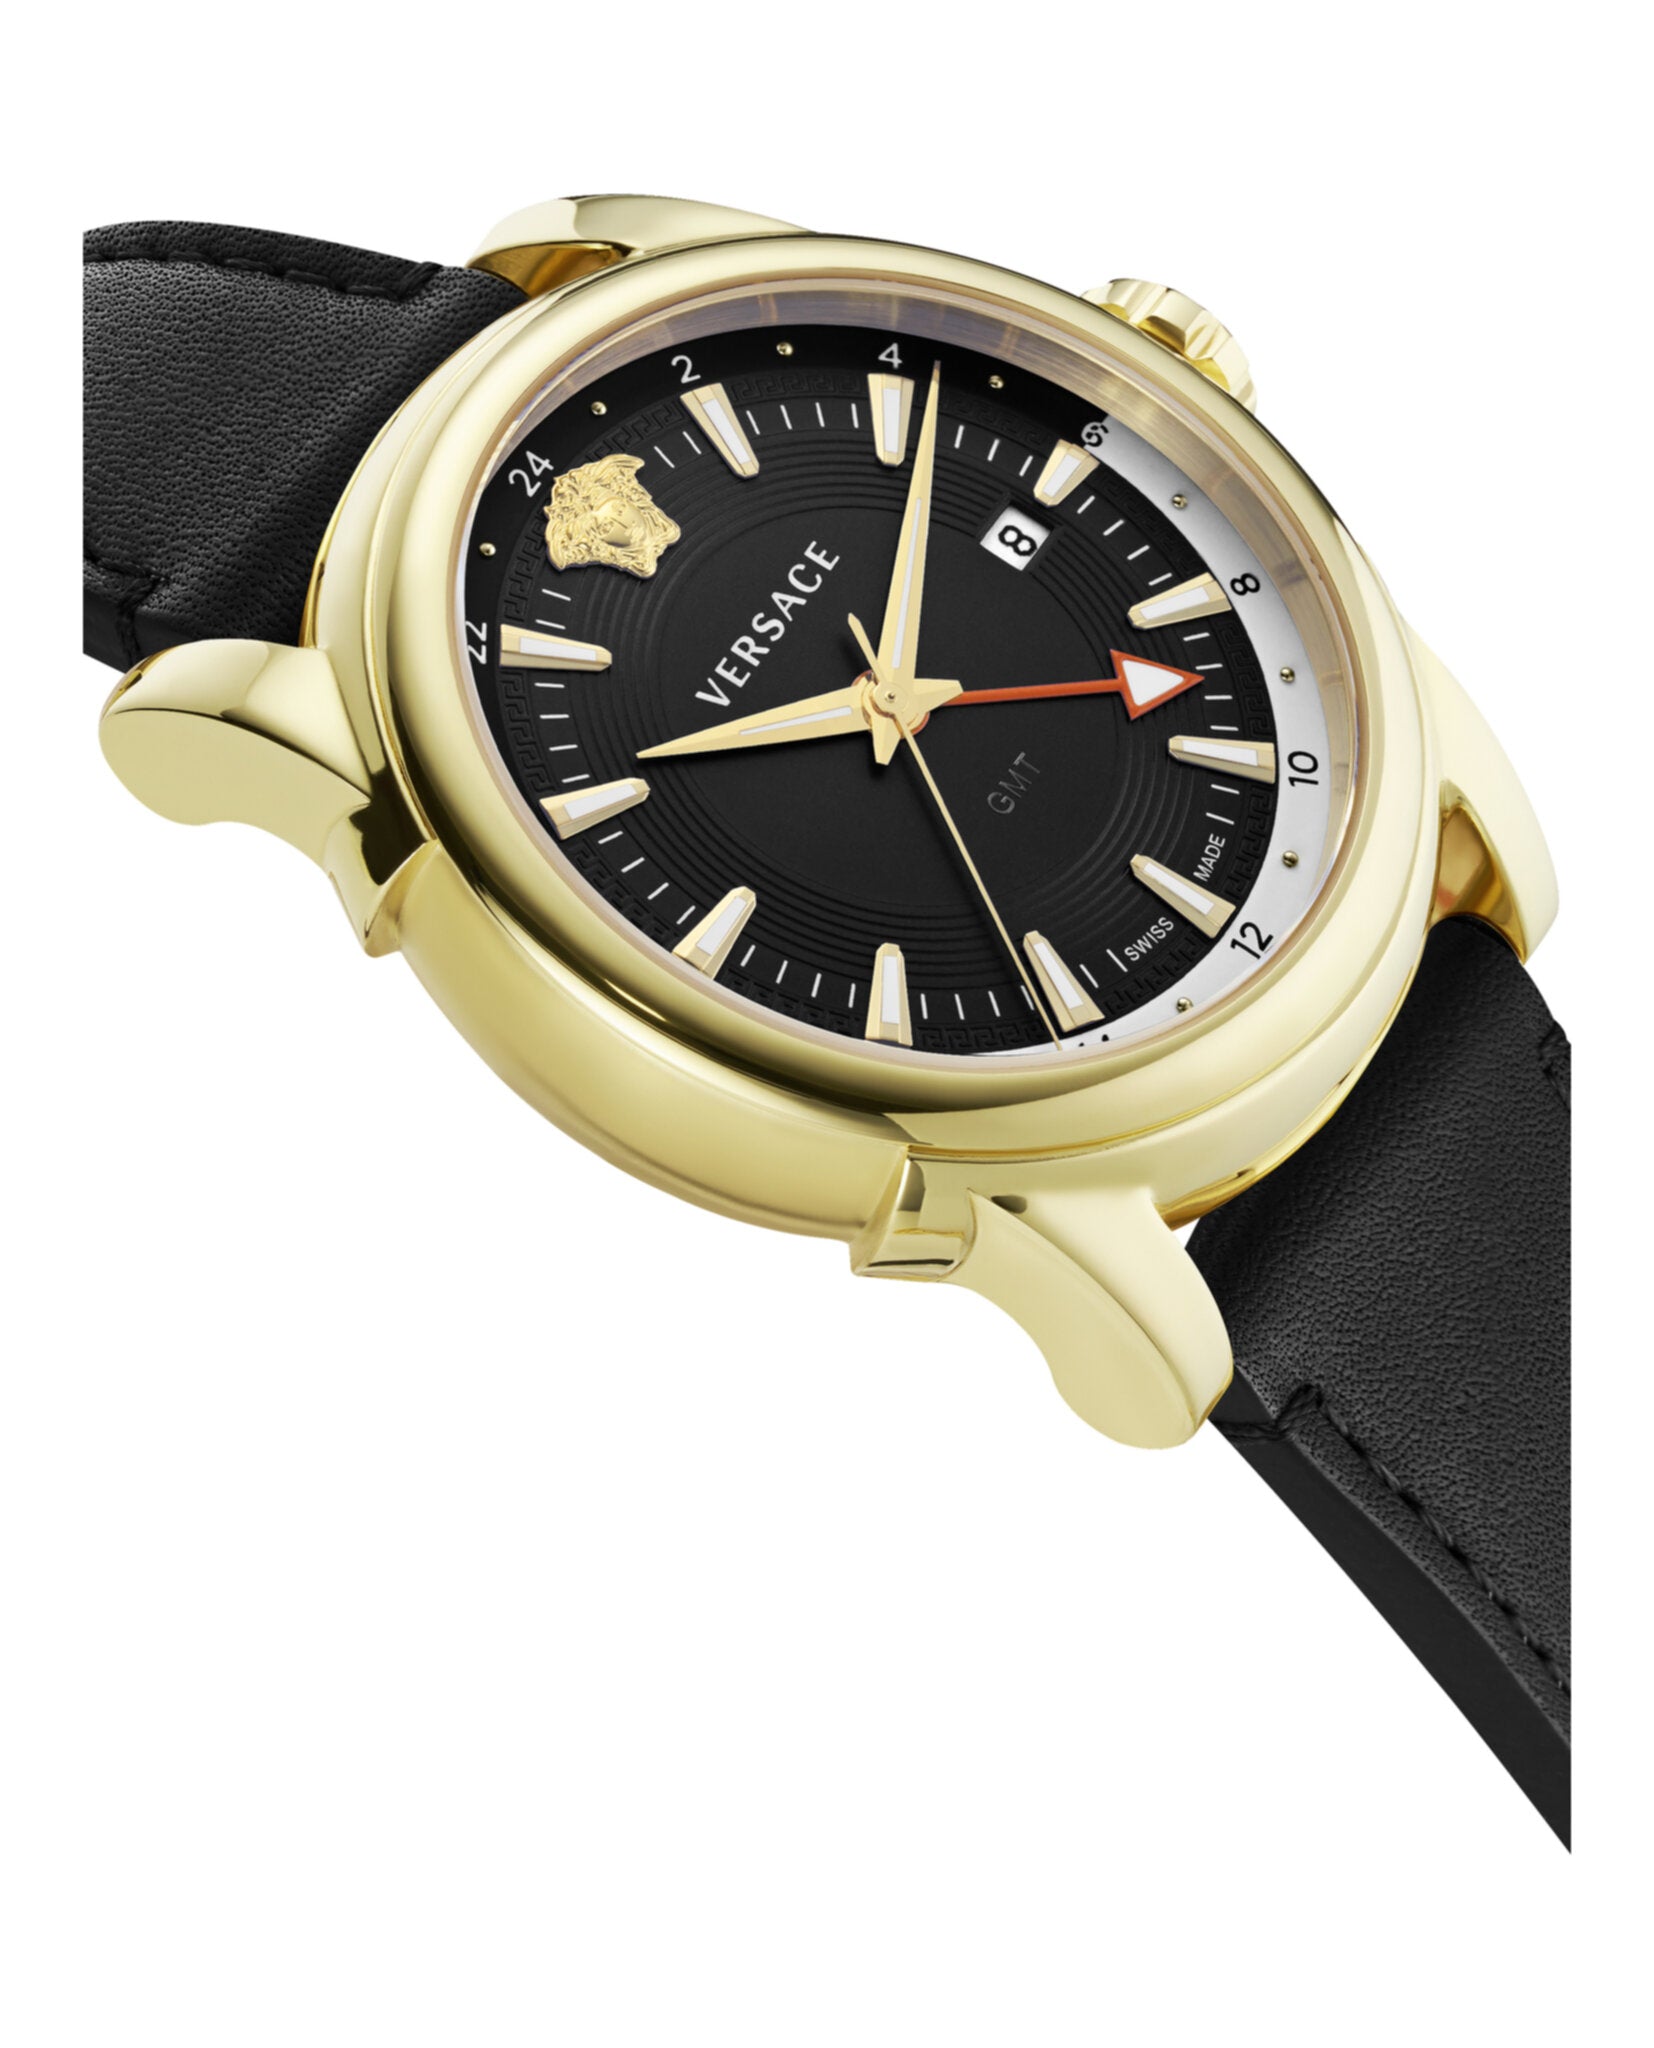 GMT Vintage Strap Watch